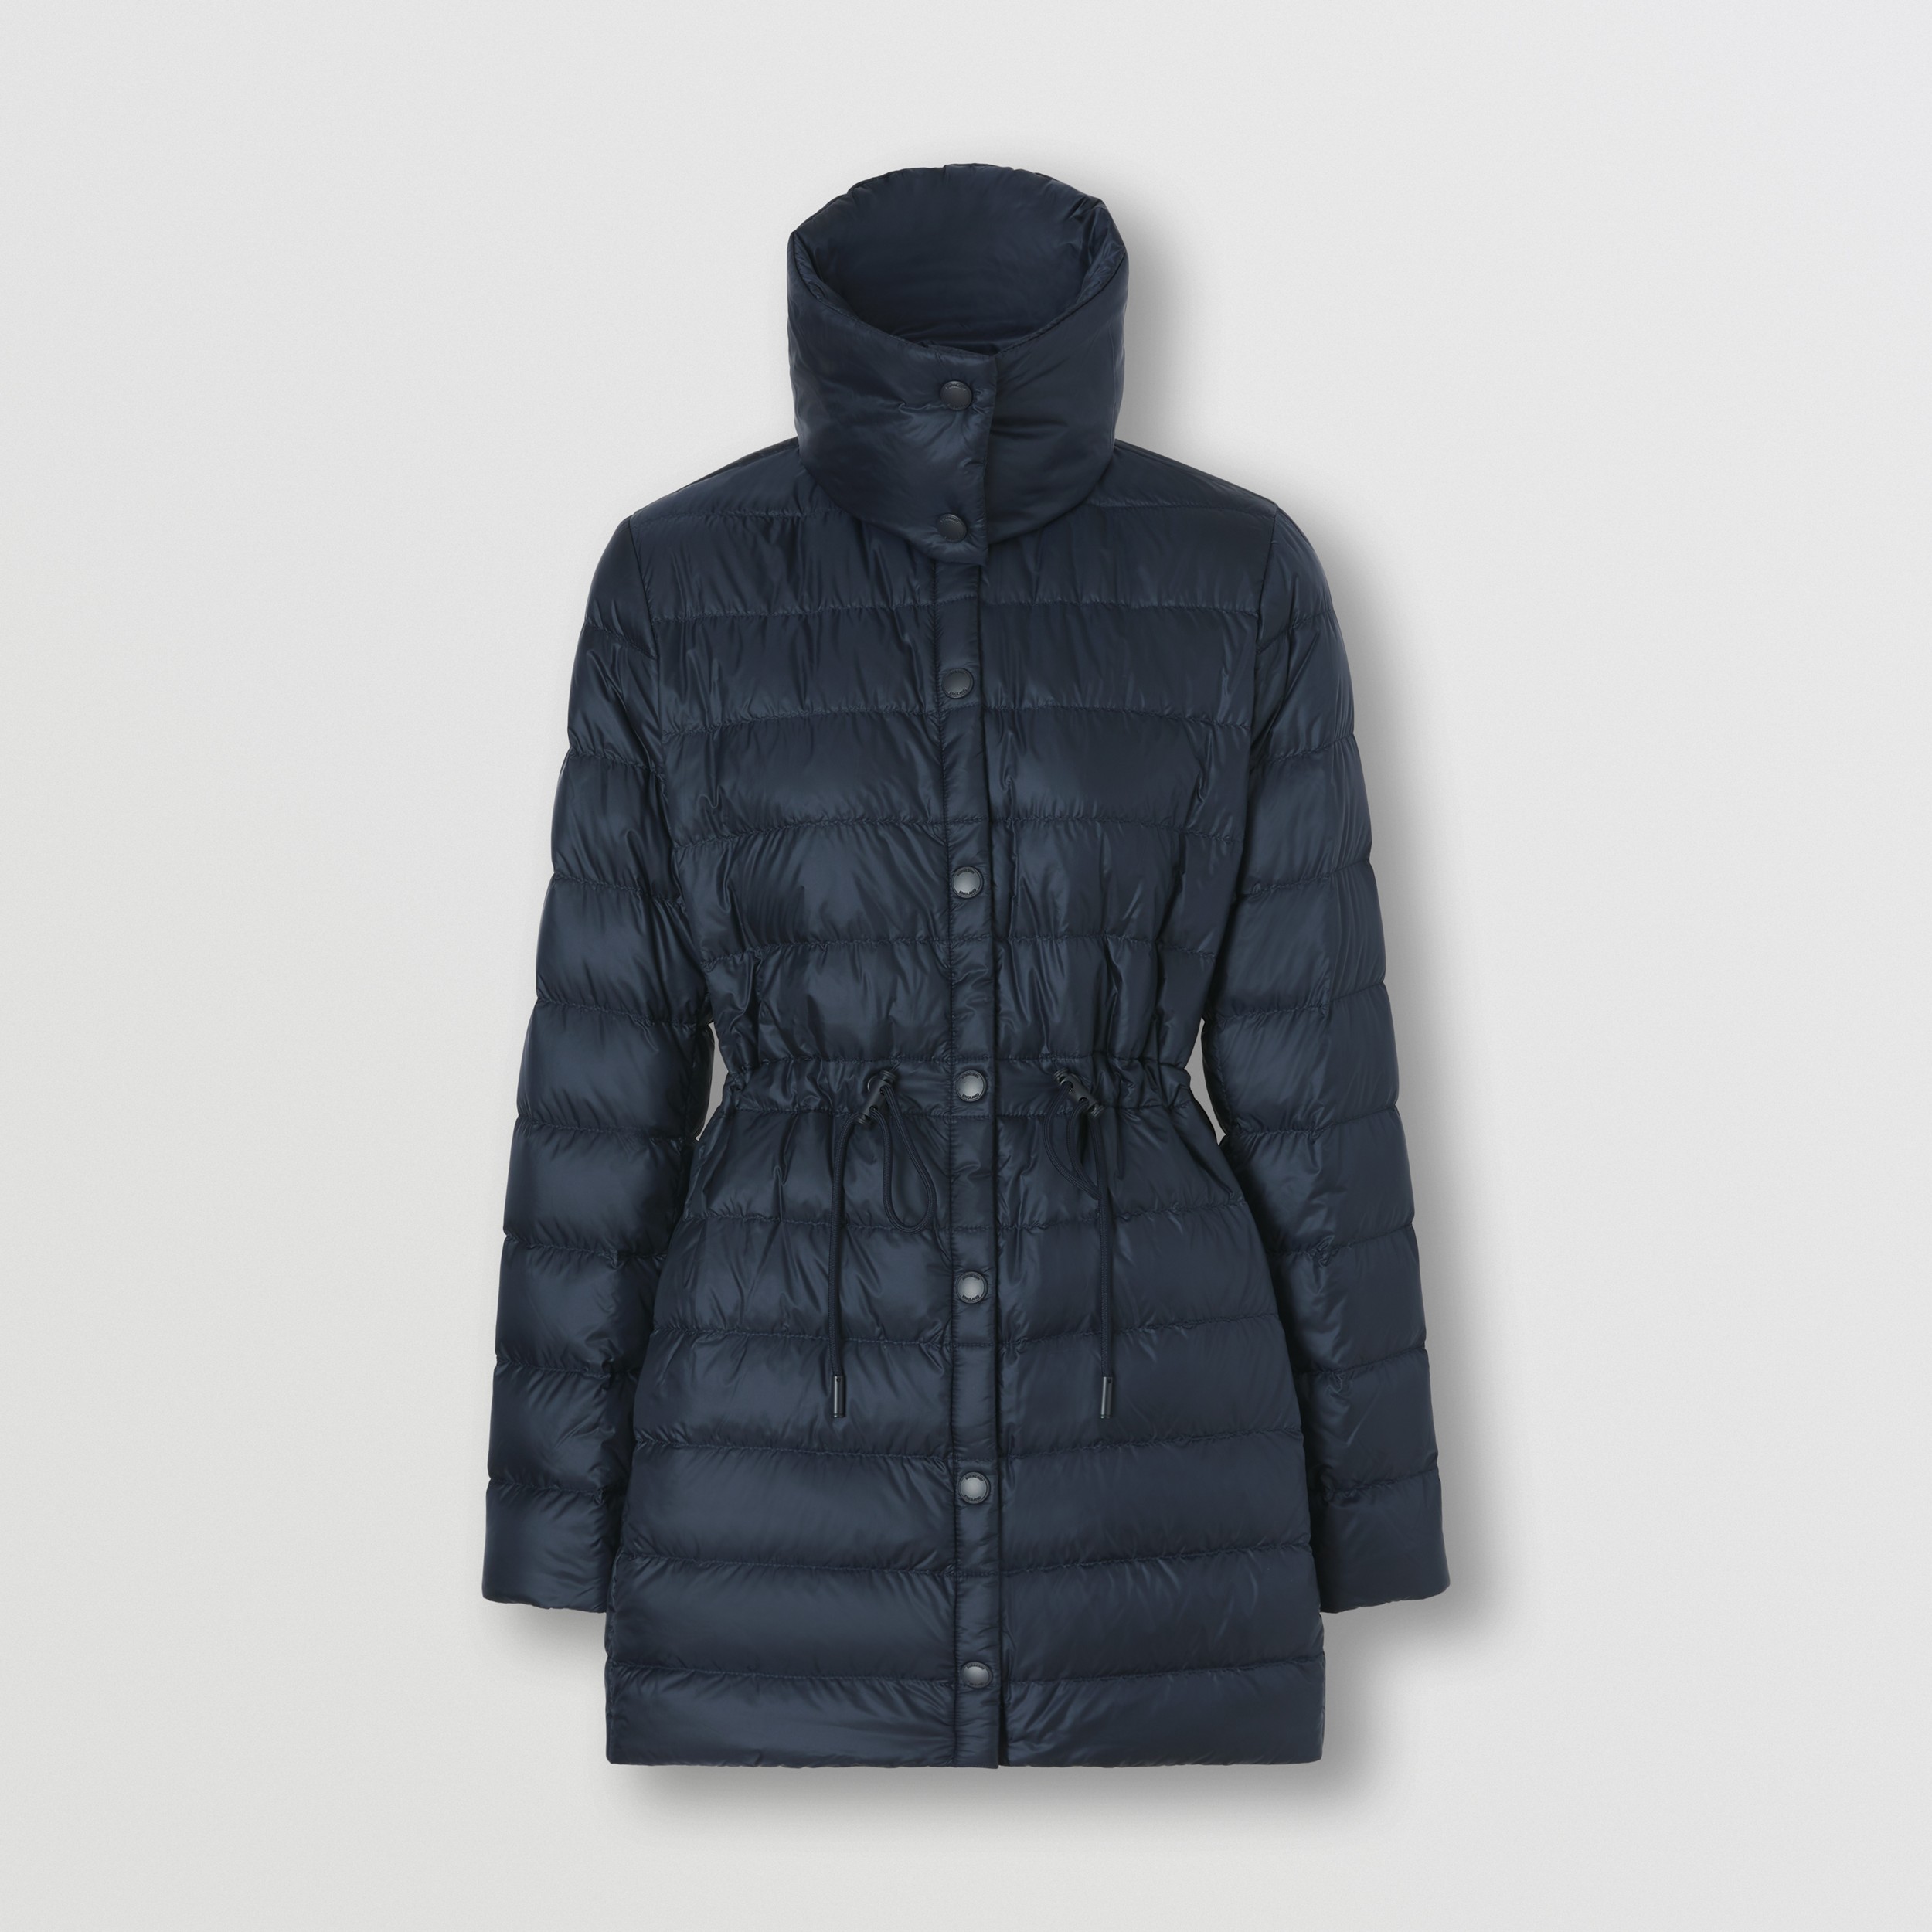 Пуховое пальто из нейлона со съемным воротником (Полночный) - Для женщин | Официальный сайт Burberry® - 4